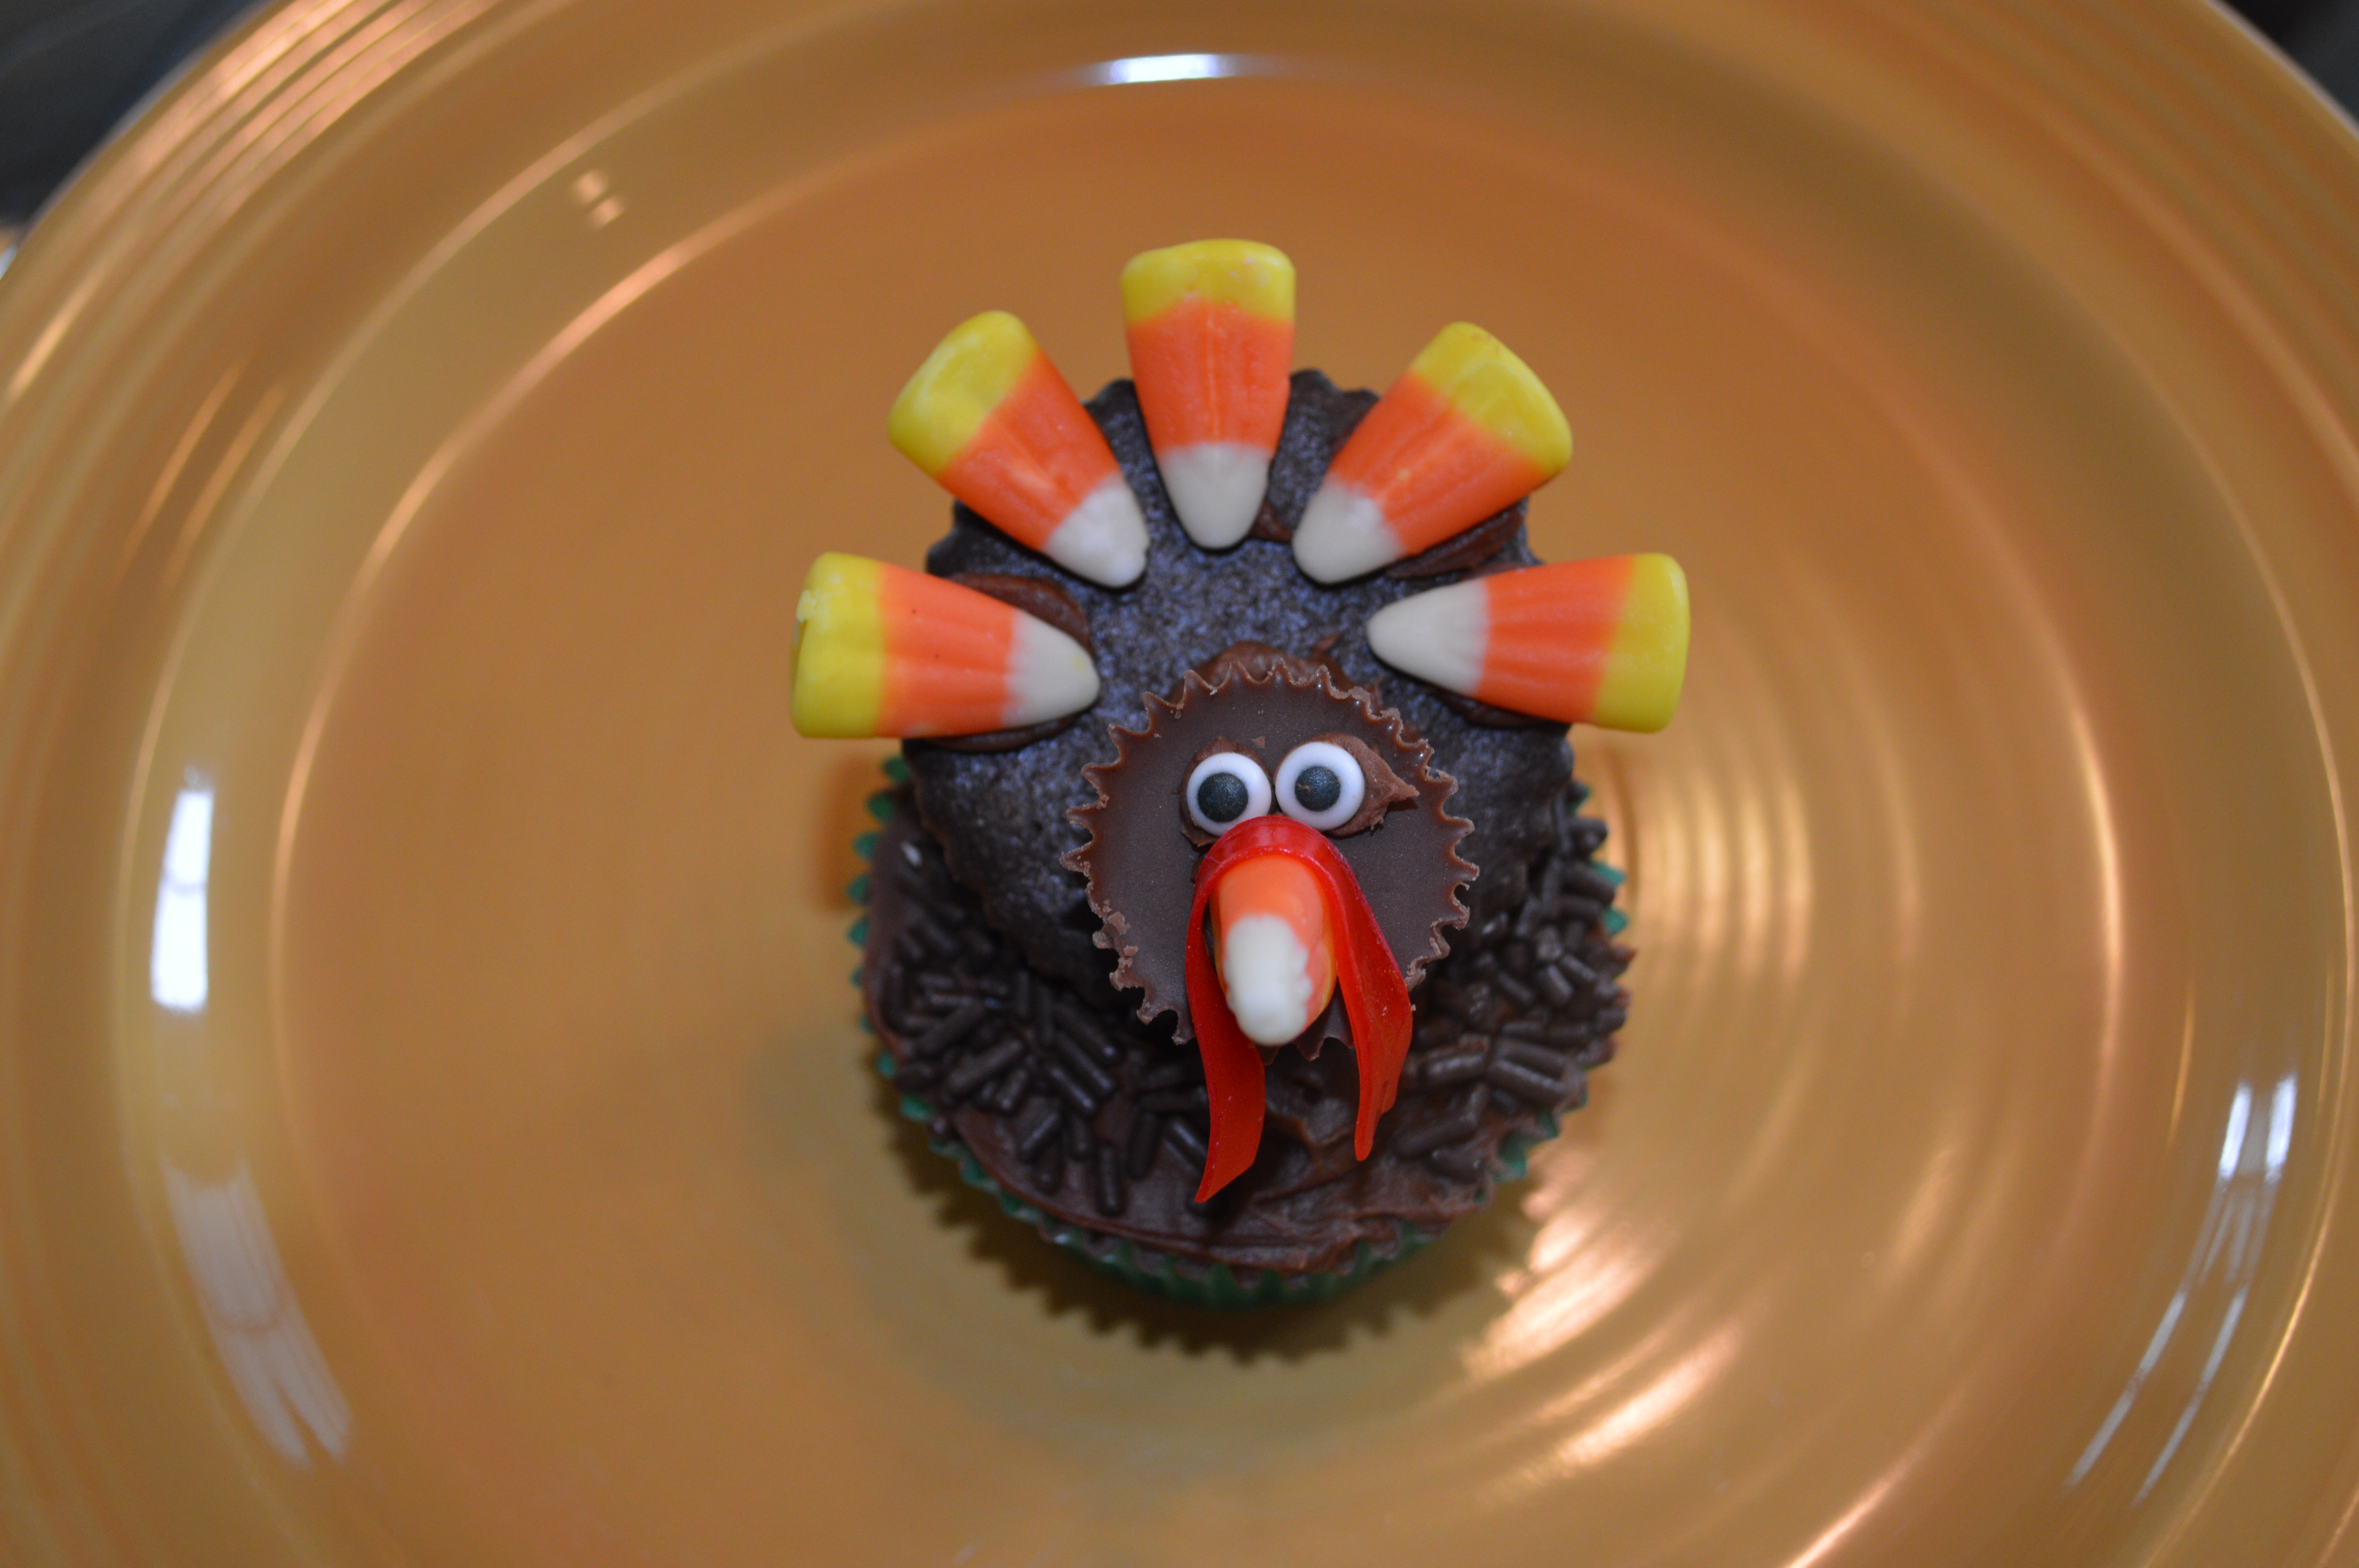 Thanksgiving Turkey Cupcake